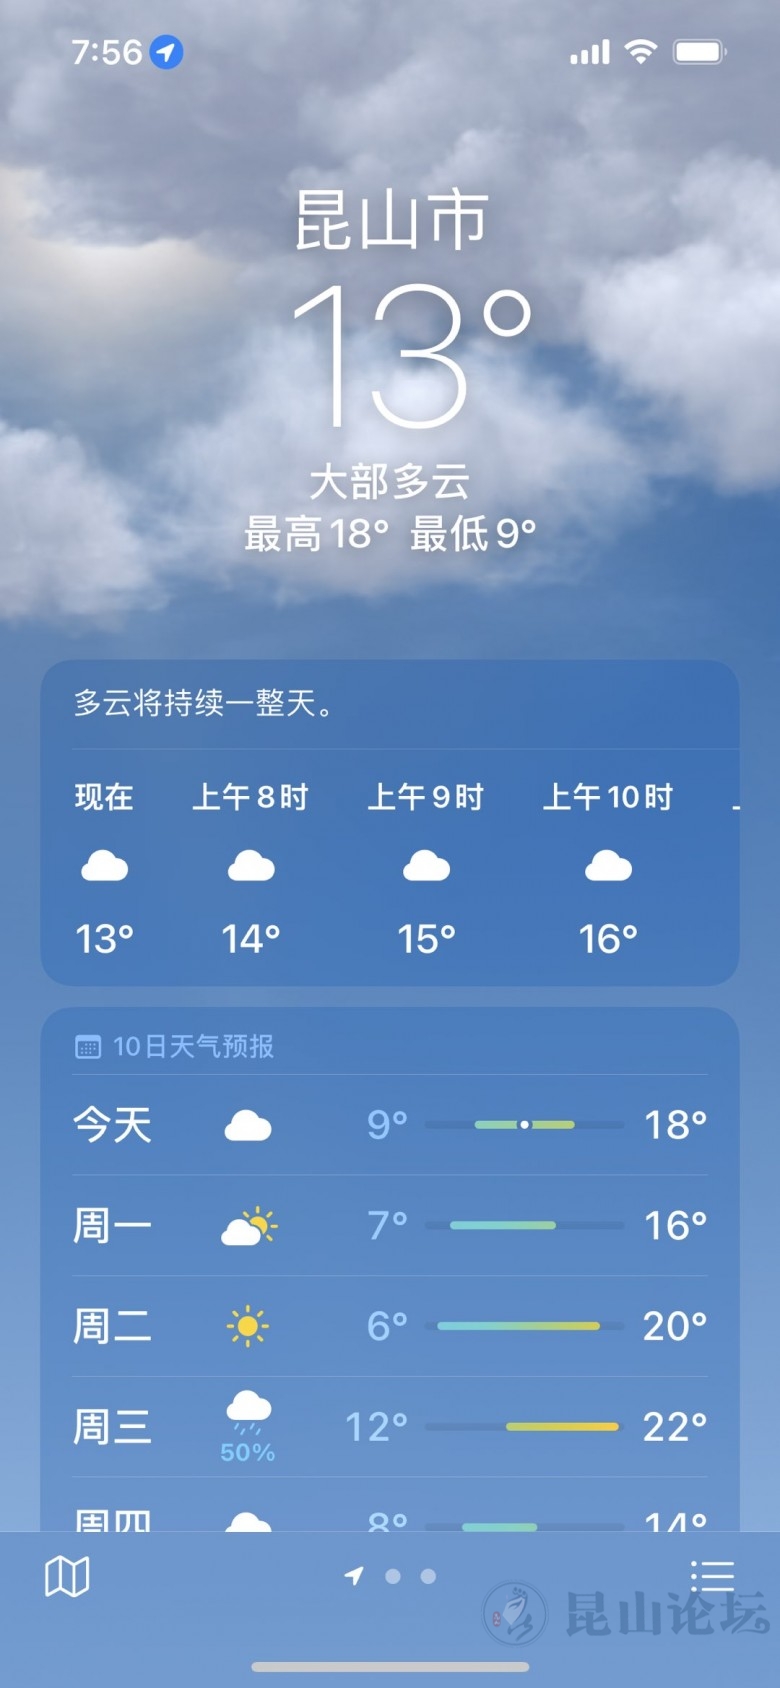 3月27日天气预报今天昆山最高气温18度阴到多云